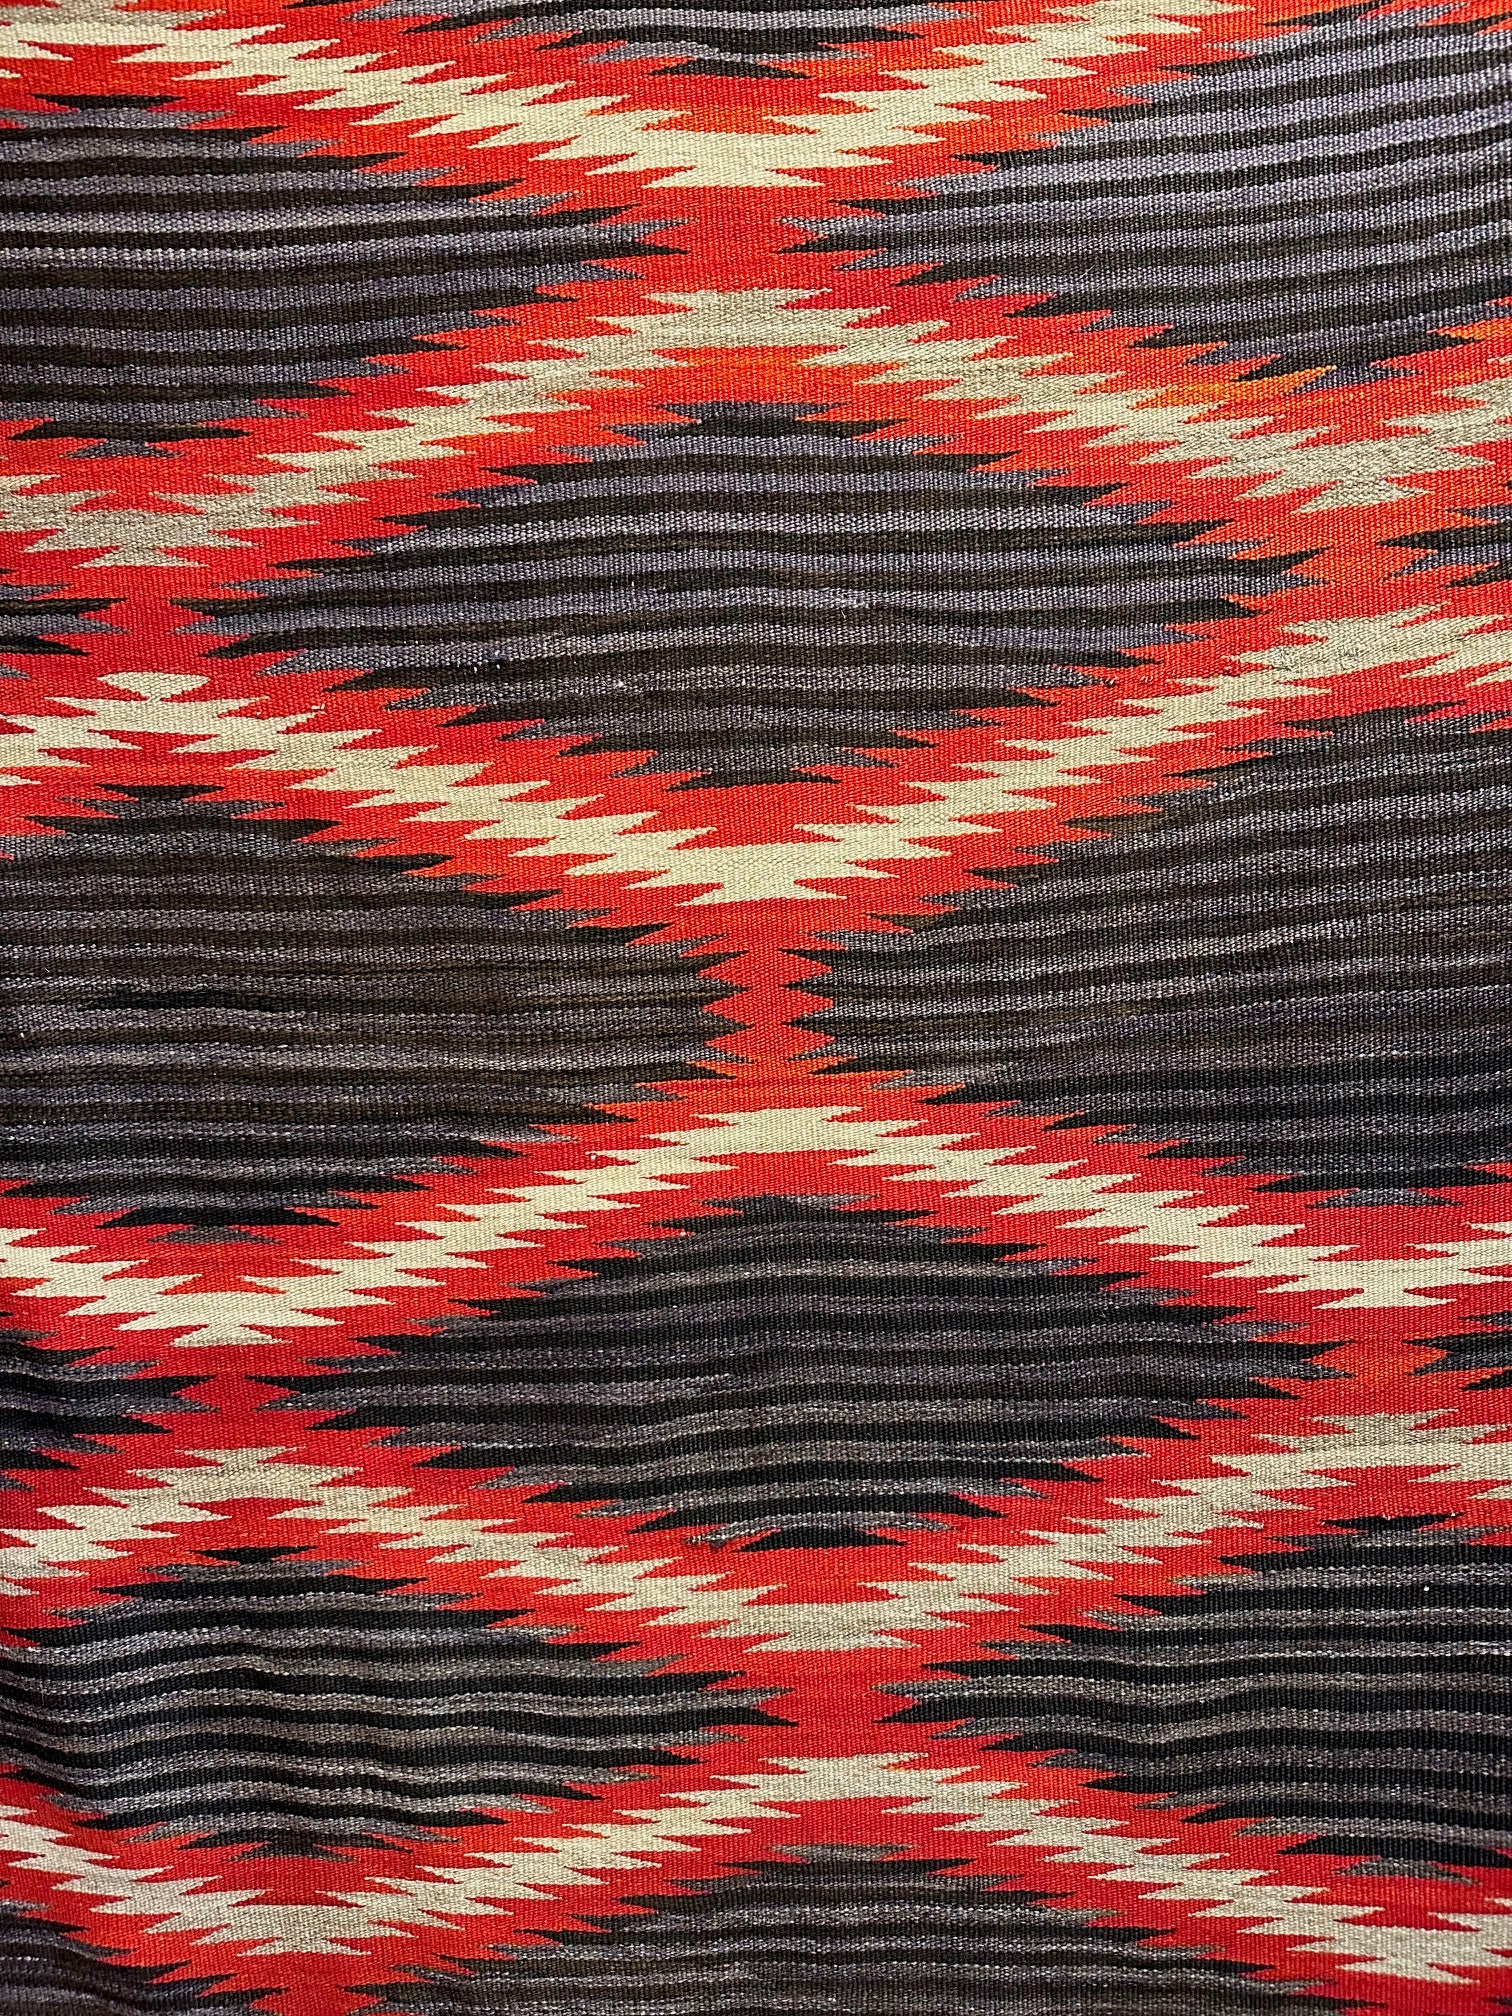 Antique Navajo Moki Wearing Blanket, navajo rug for sale, authentic, telluride furnishings, telluride gallery 